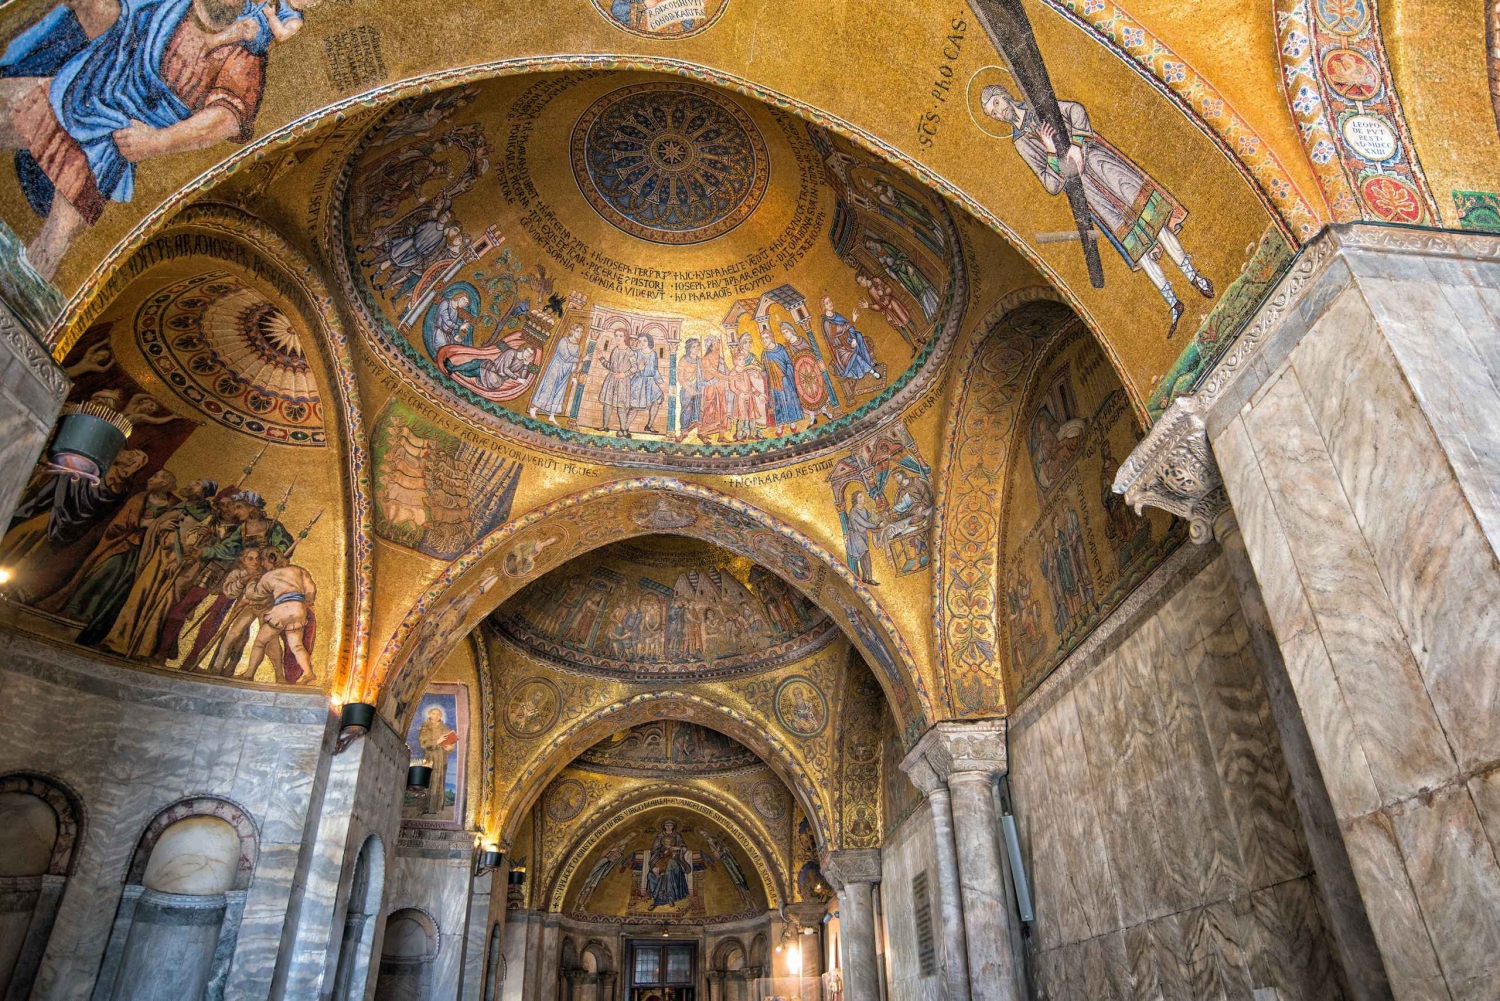 Venice: St. Mark's Basilica, Doge Palace, and Gondola Ride